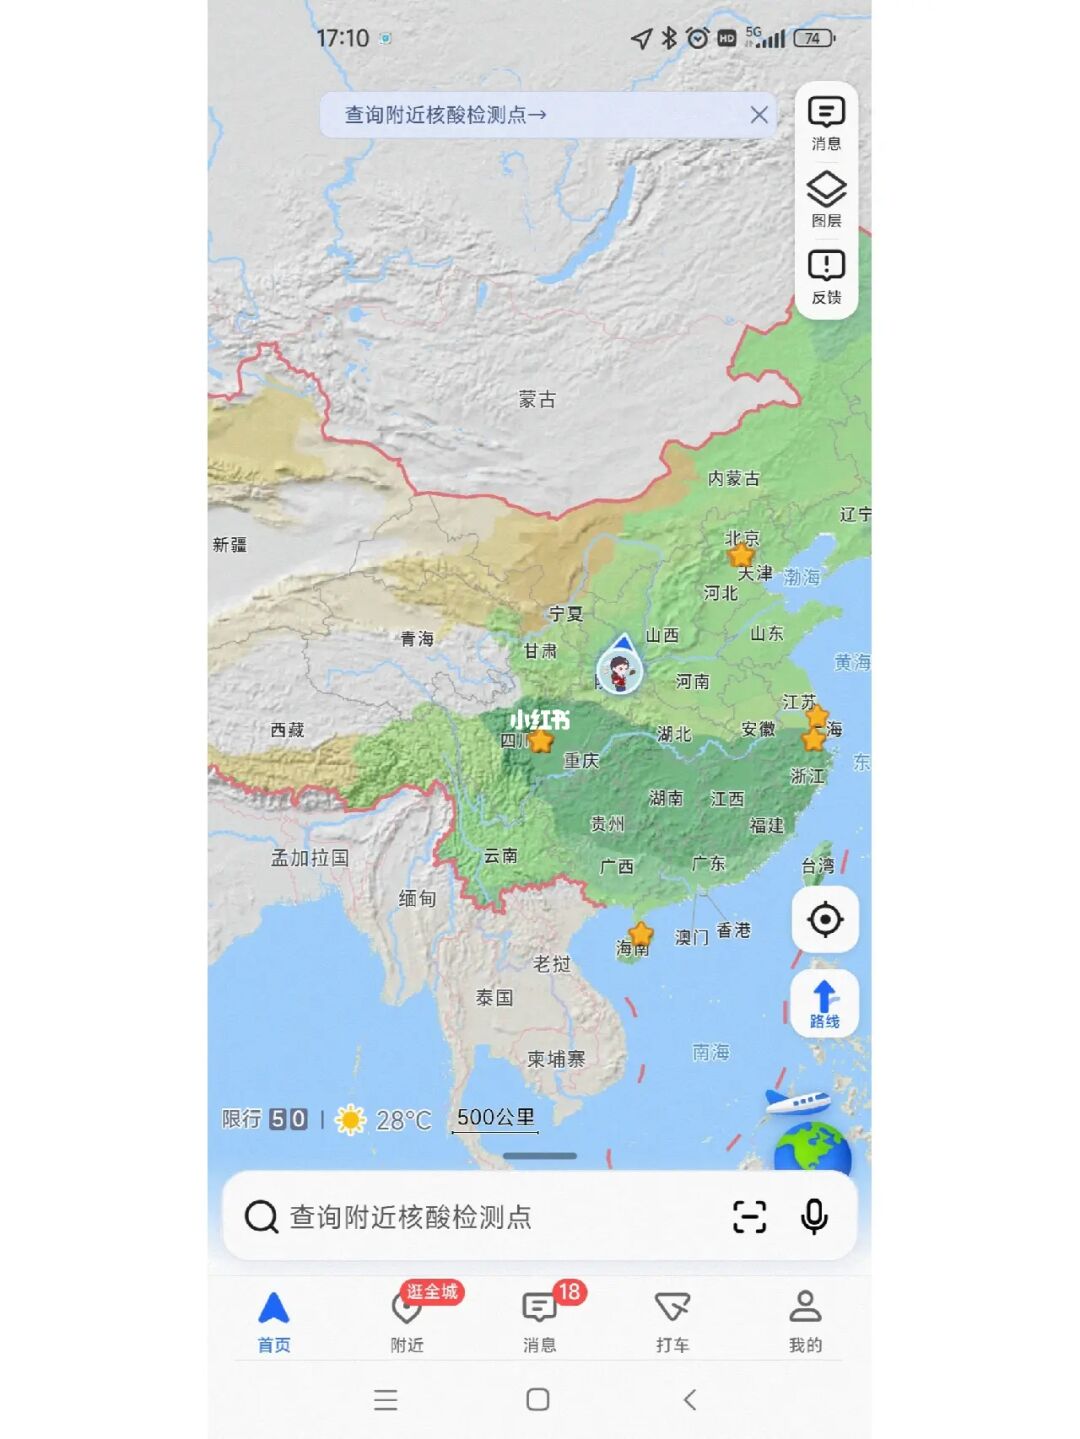 高德地图升级“积水地图”，北京、泉州等城市可查看易积水点